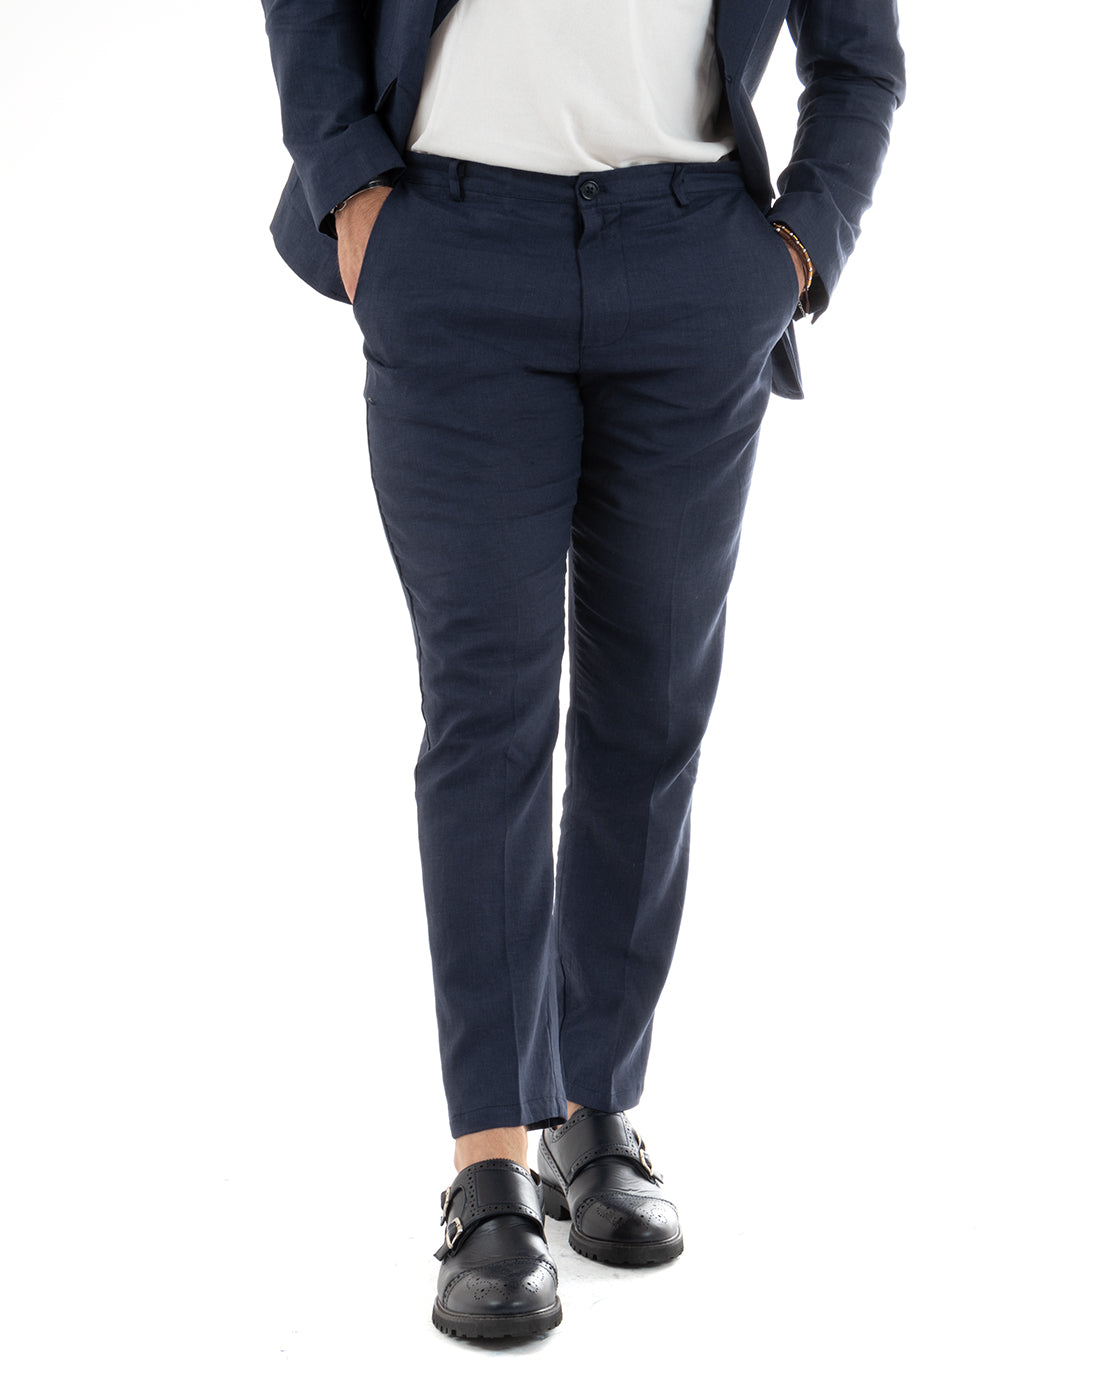 Single Breasted Men's Suit Linen Suit Suit Jacket Trousers Elegant Blue Ceremony GIOSAL-OU2303A